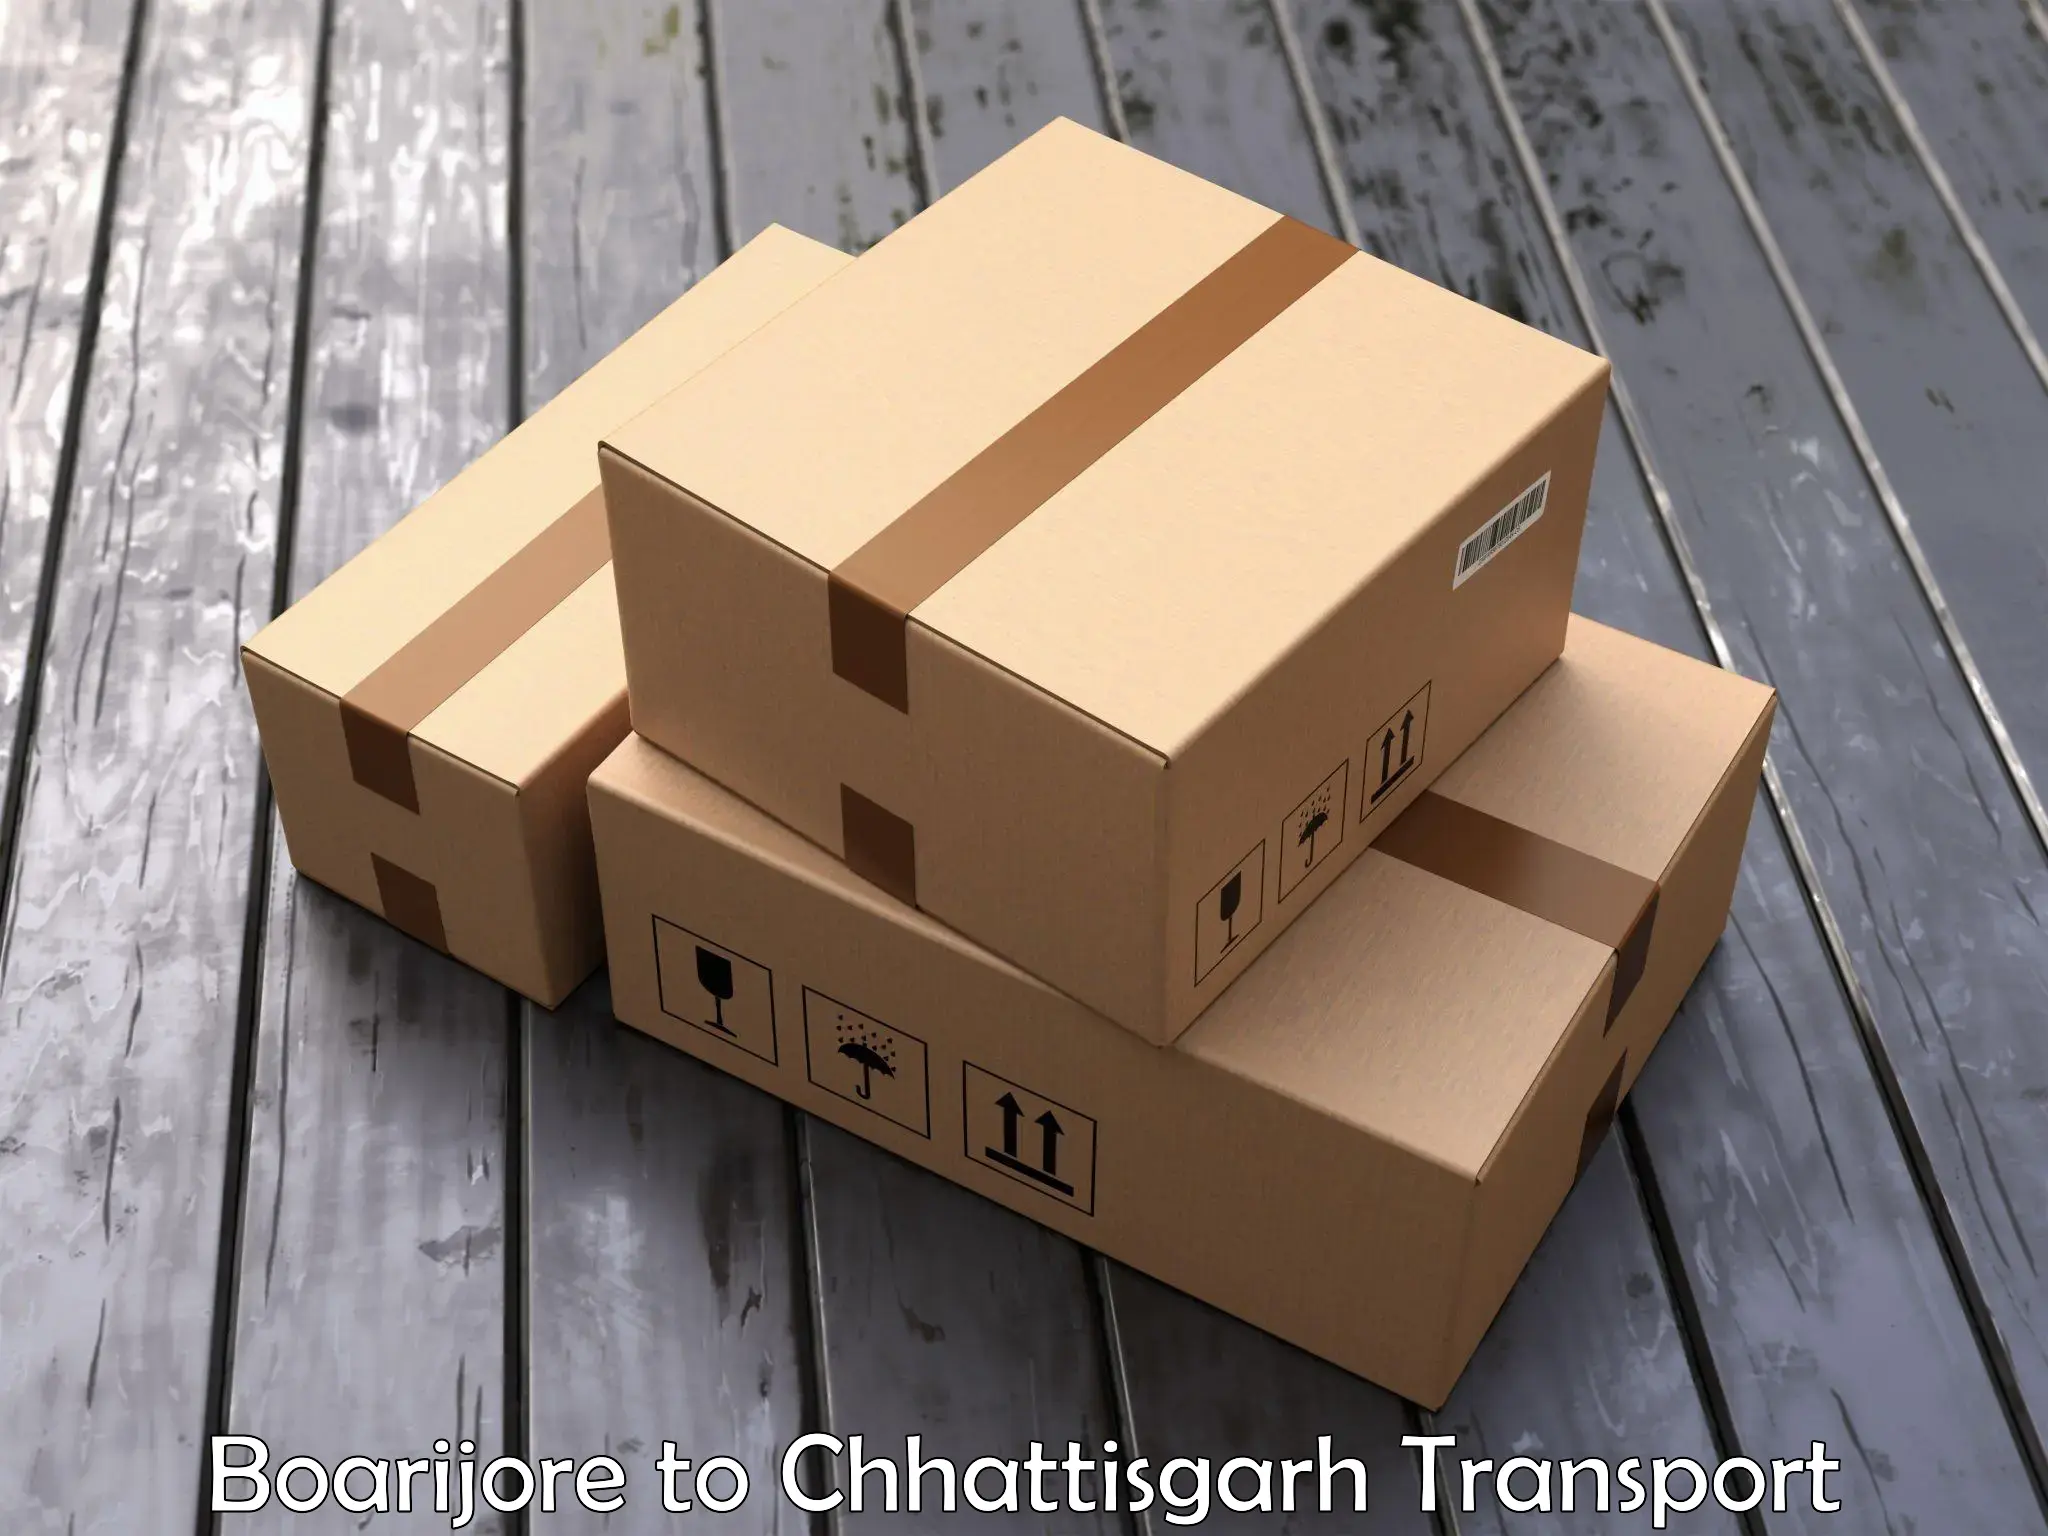 Express transport services Boarijore to Chhattisgarh